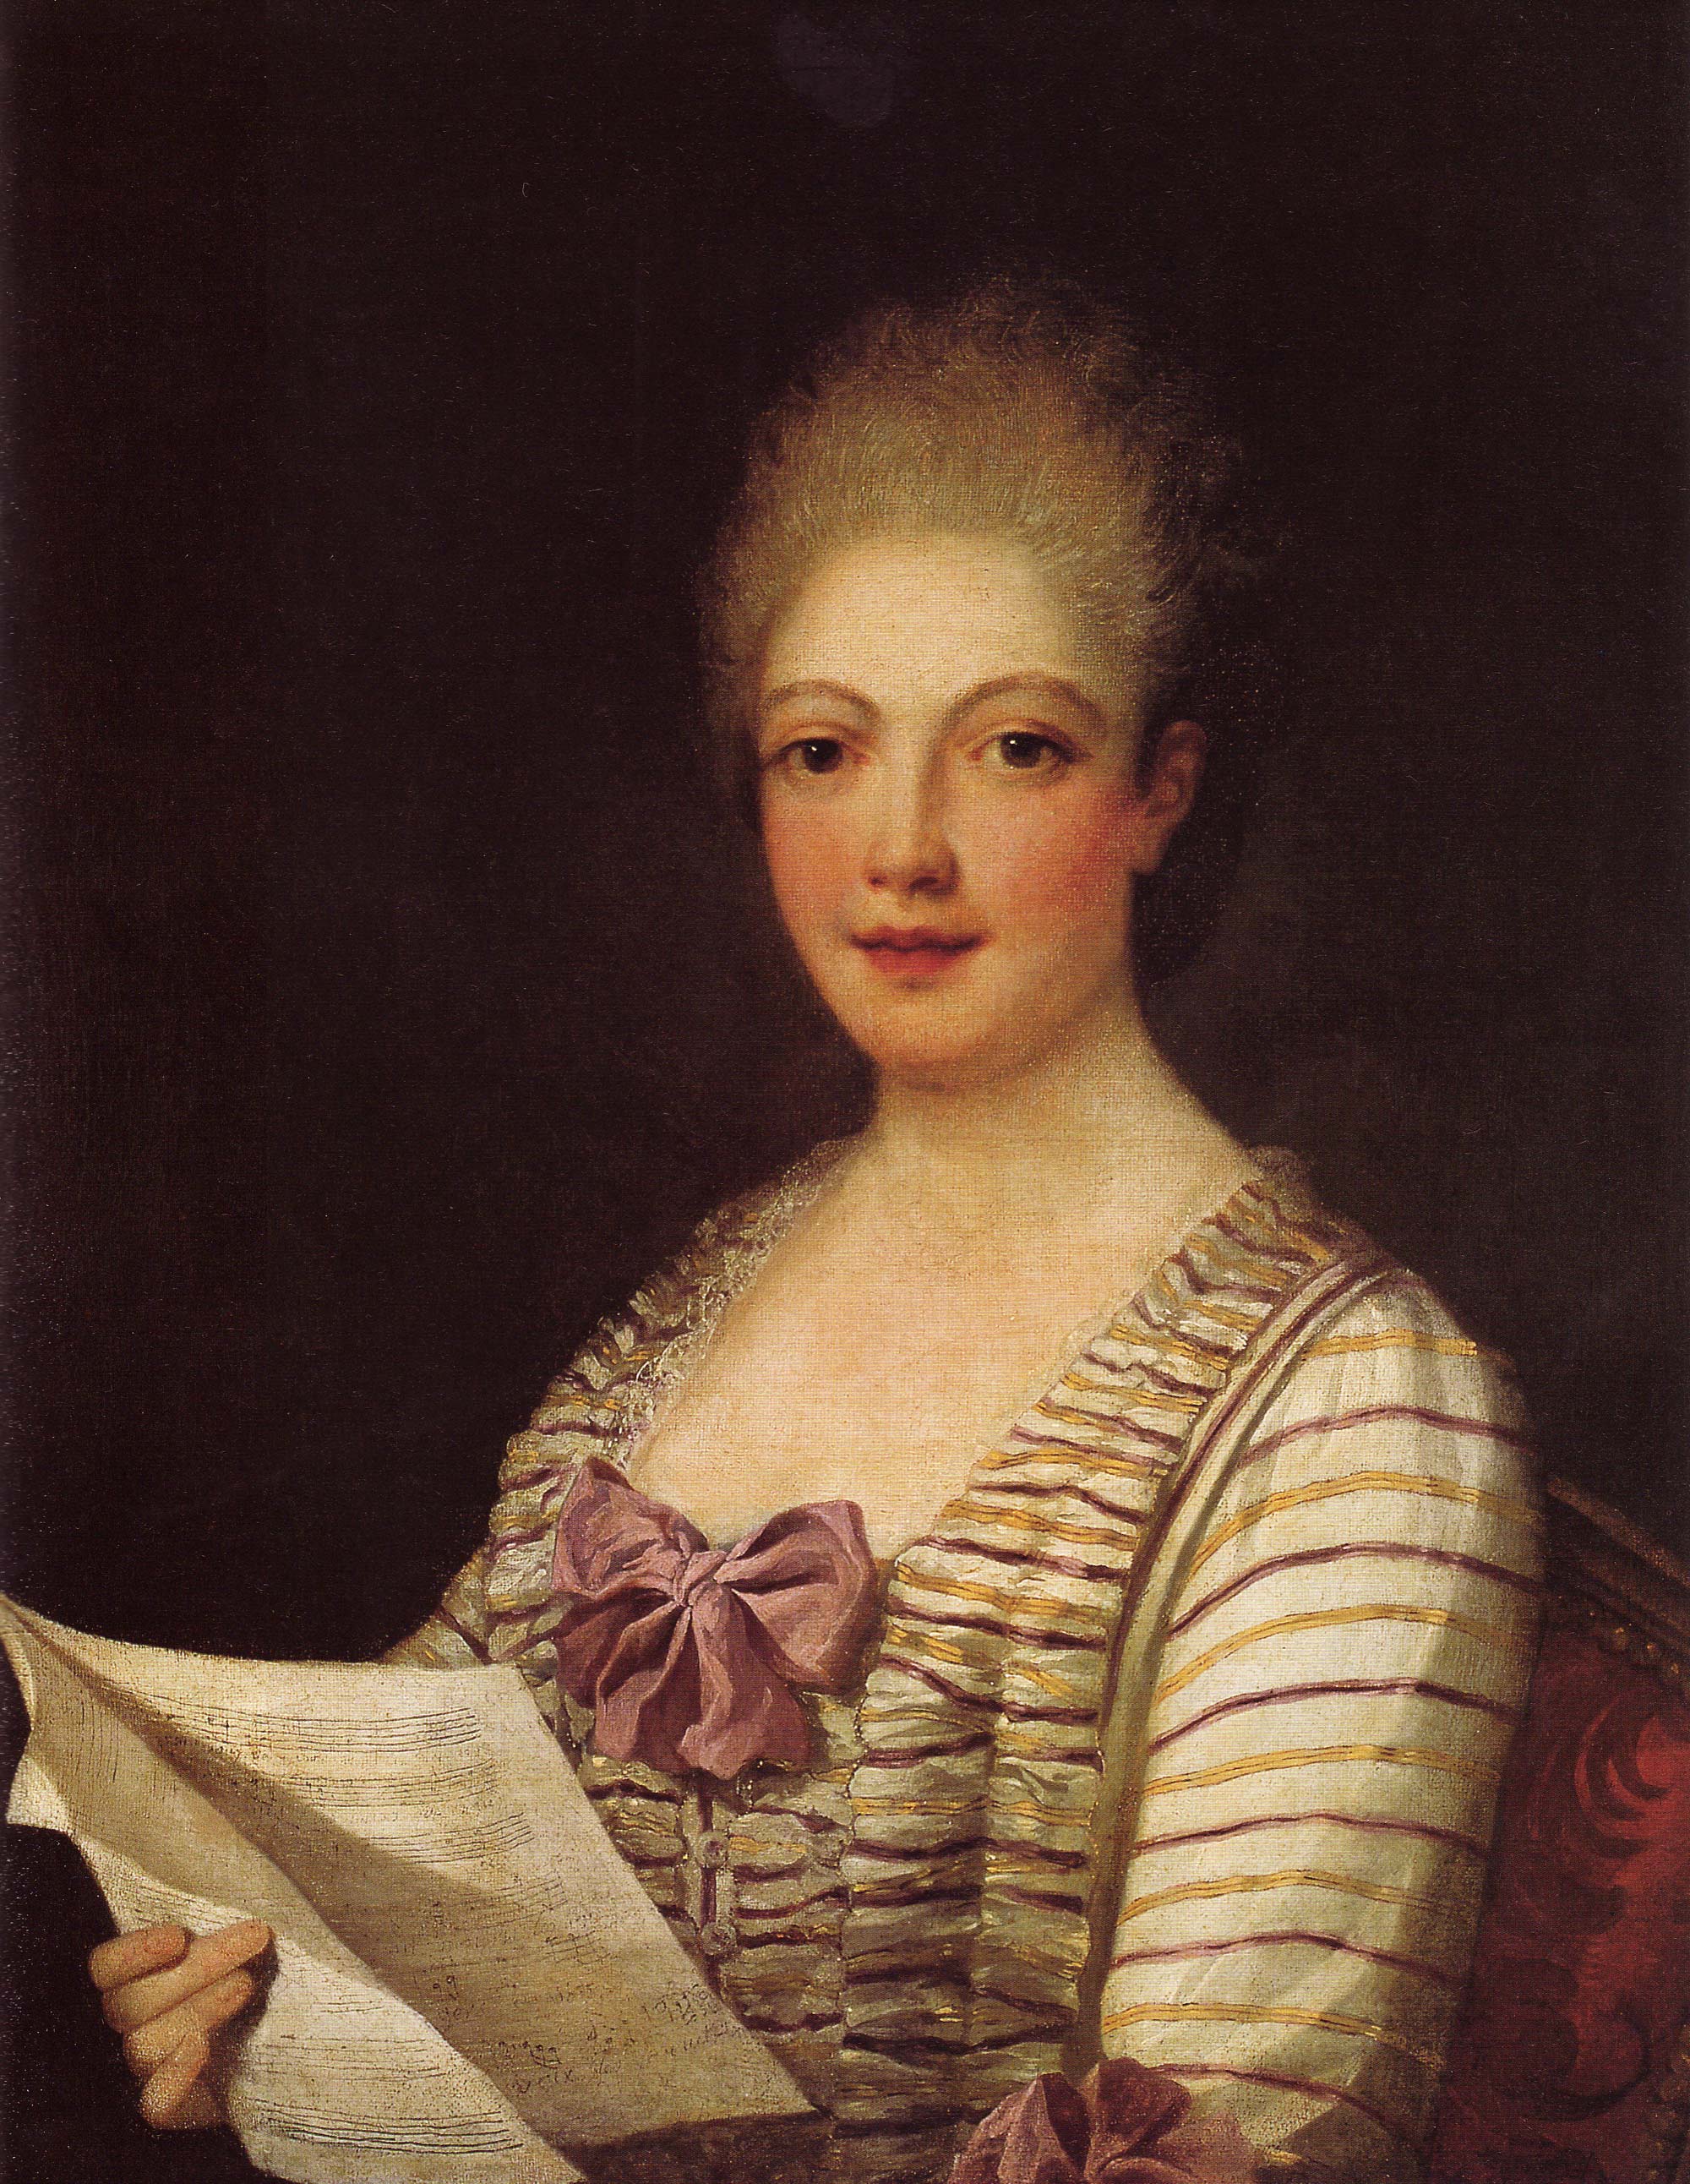  Ritratto di Lucrezia Aguiari: (1741-1783), soprano. Autore Pietro Melchiorre Ferrari.